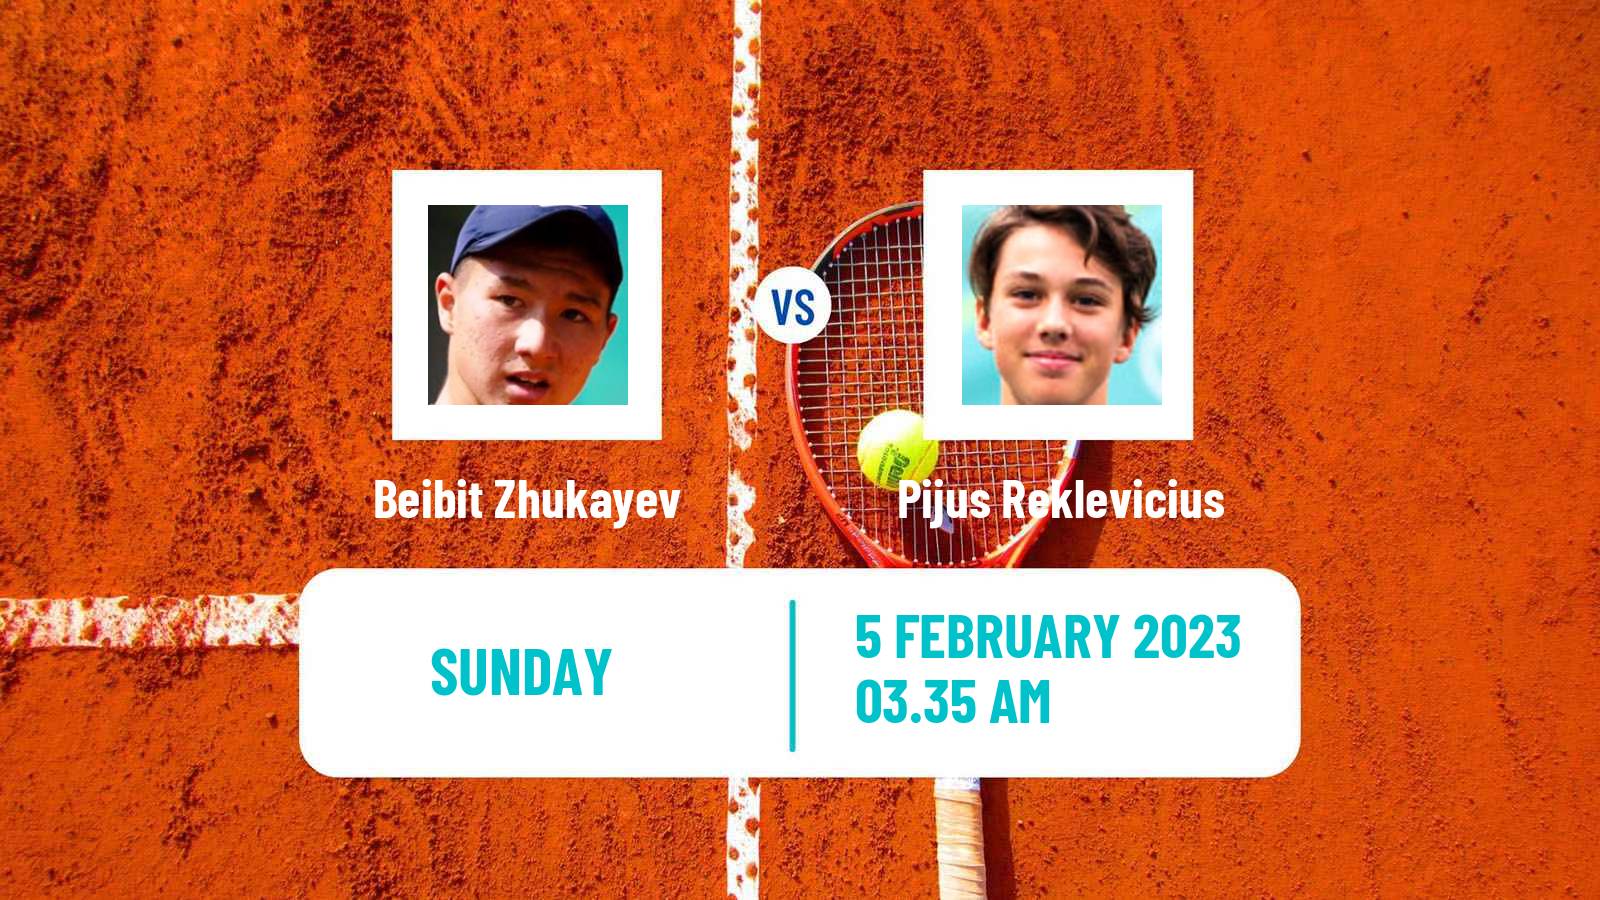 Tennis ATP Challenger Beibit Zhukayev - Pijus Reklevicius